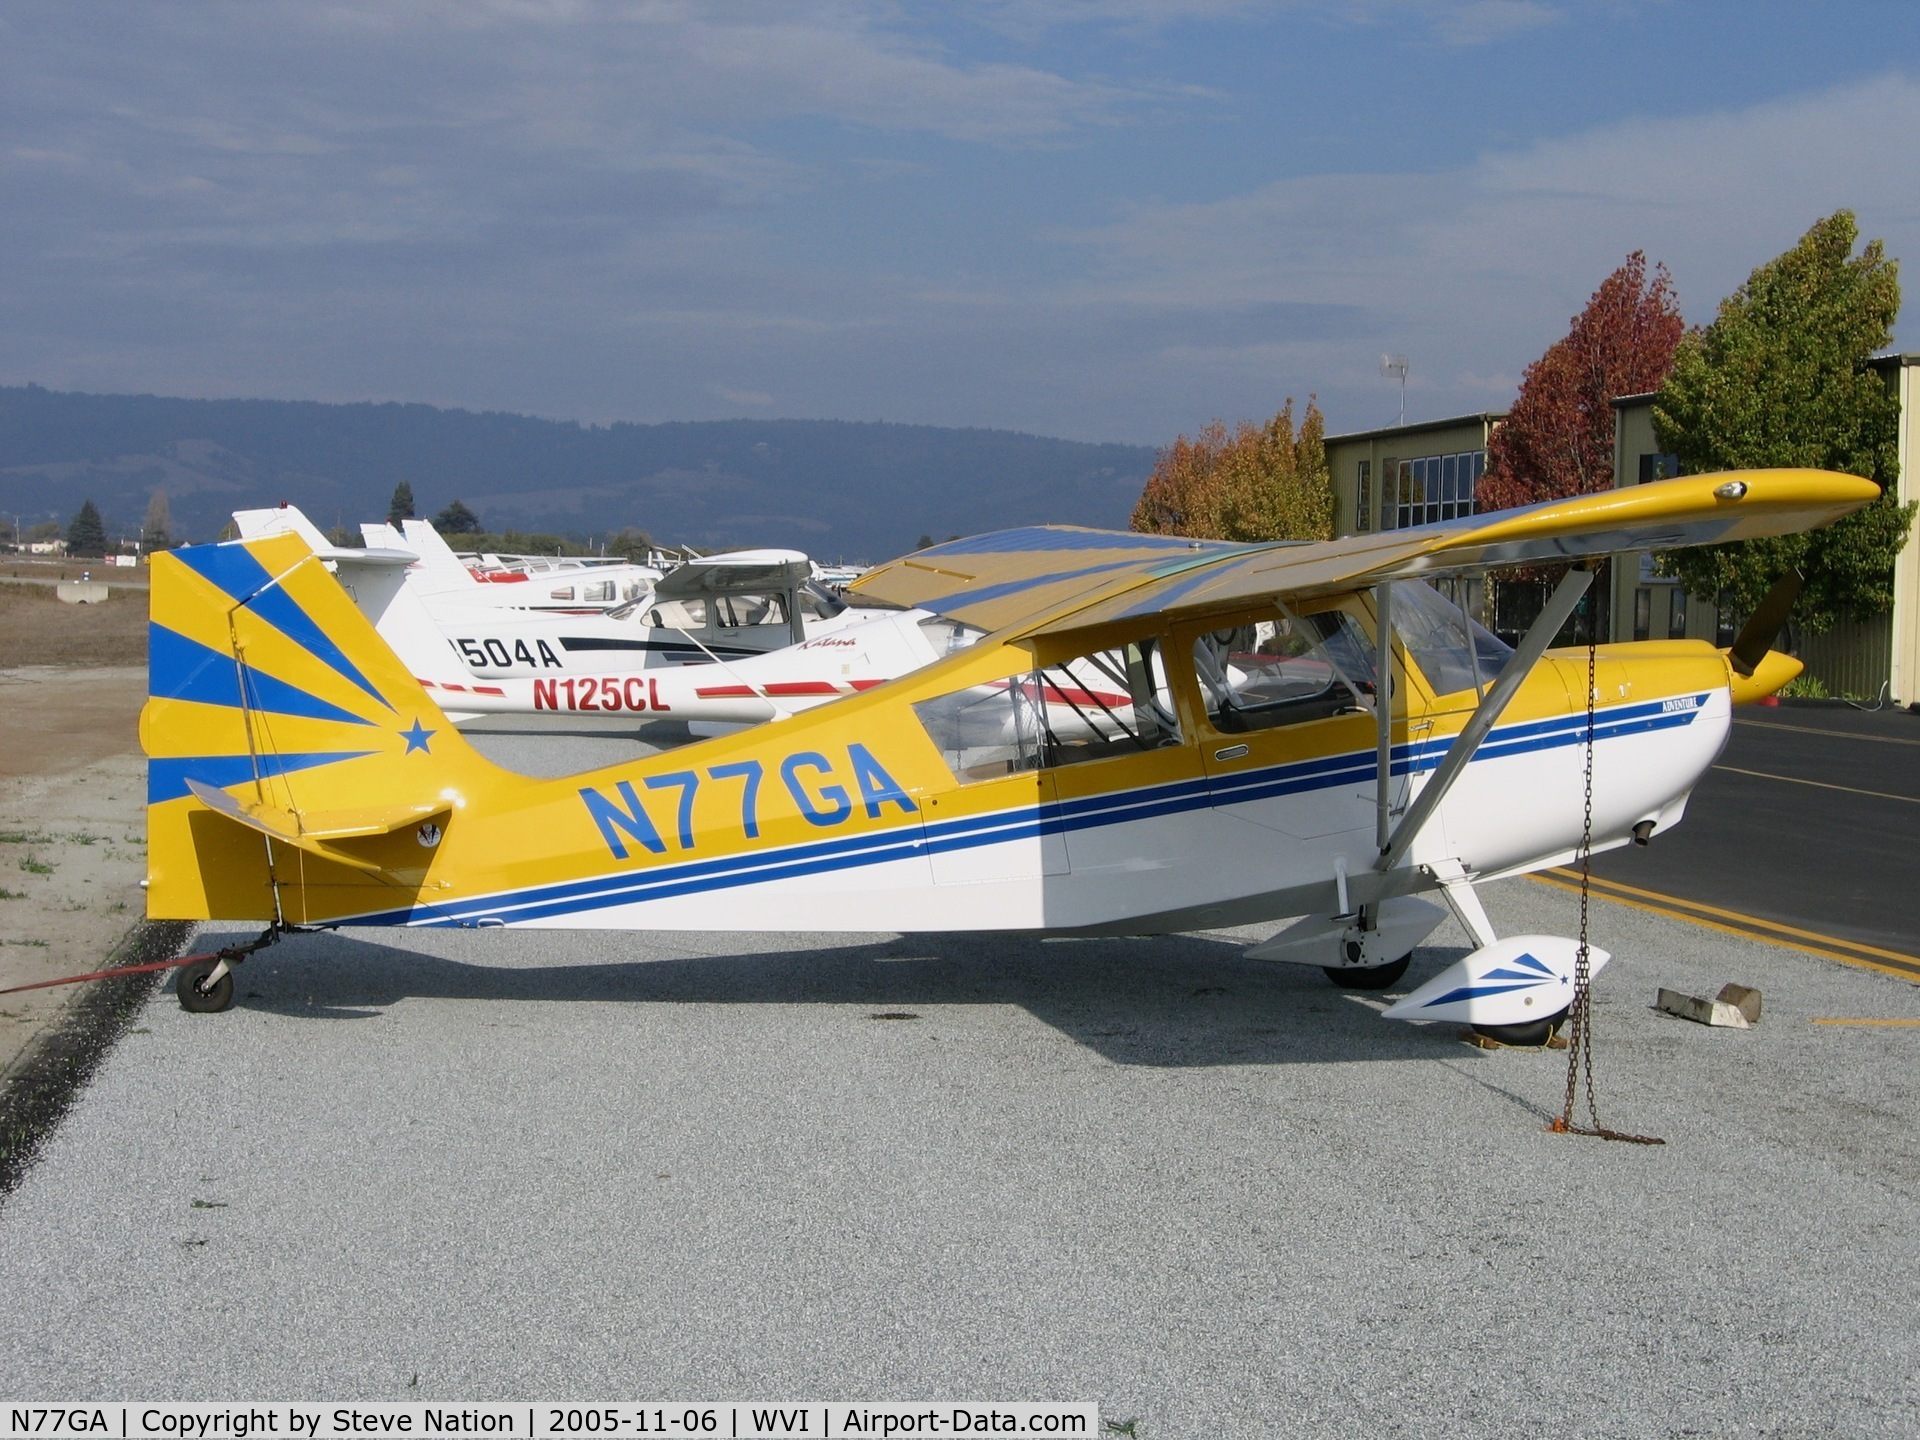 N77GA, 2003 American Champion 7GCAA Citabria C/N 471-2003, Ocean Air Flight Services 2003 American Champion 7GCAA at Watsonville, CA